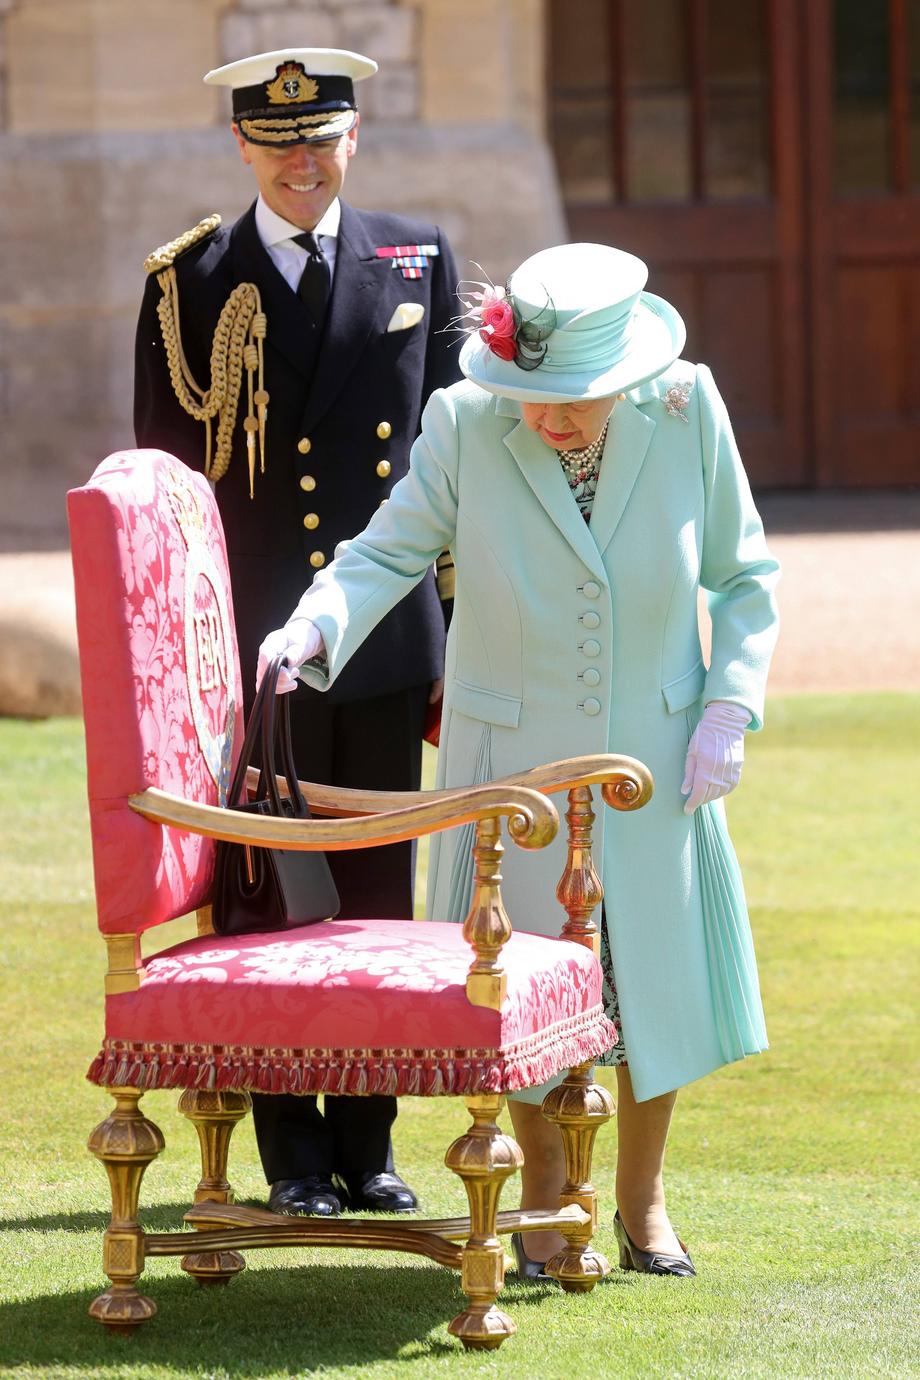 Królowa Elżbieta II jest najstarszą i najdłużej panującą królową brytyjską, a także najstarszym i najdłużej panującym monarchą na świecie